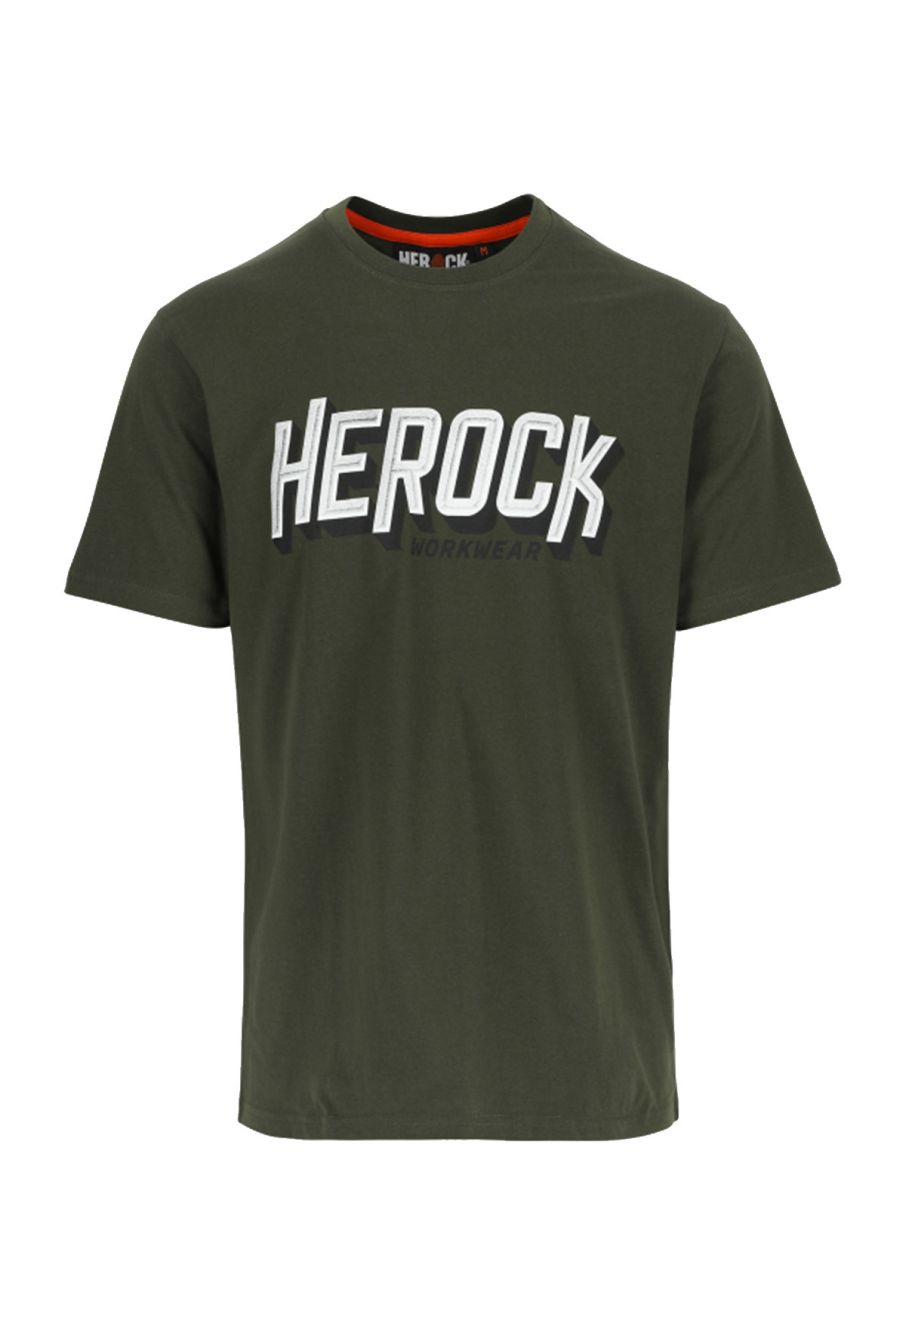 Herock Logo T-shirt - Dark Khaki